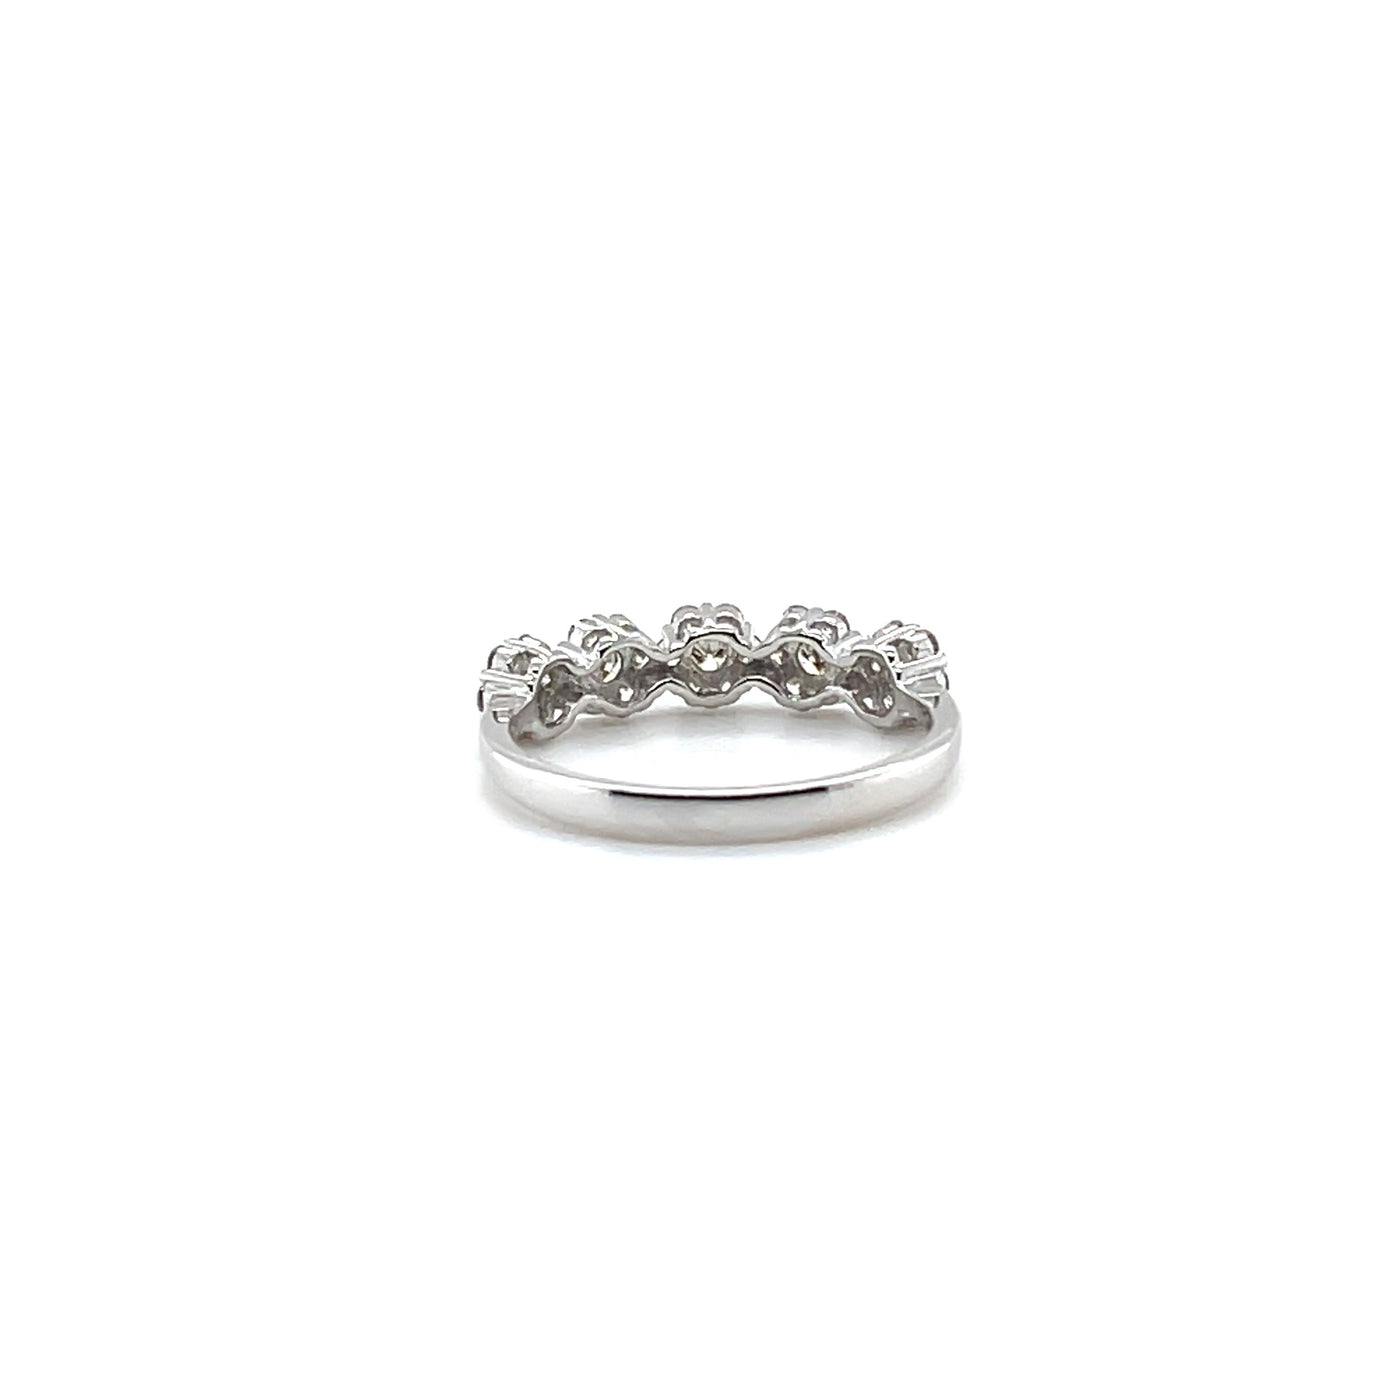 'Mia' 18ct white gold diamond cluster ring